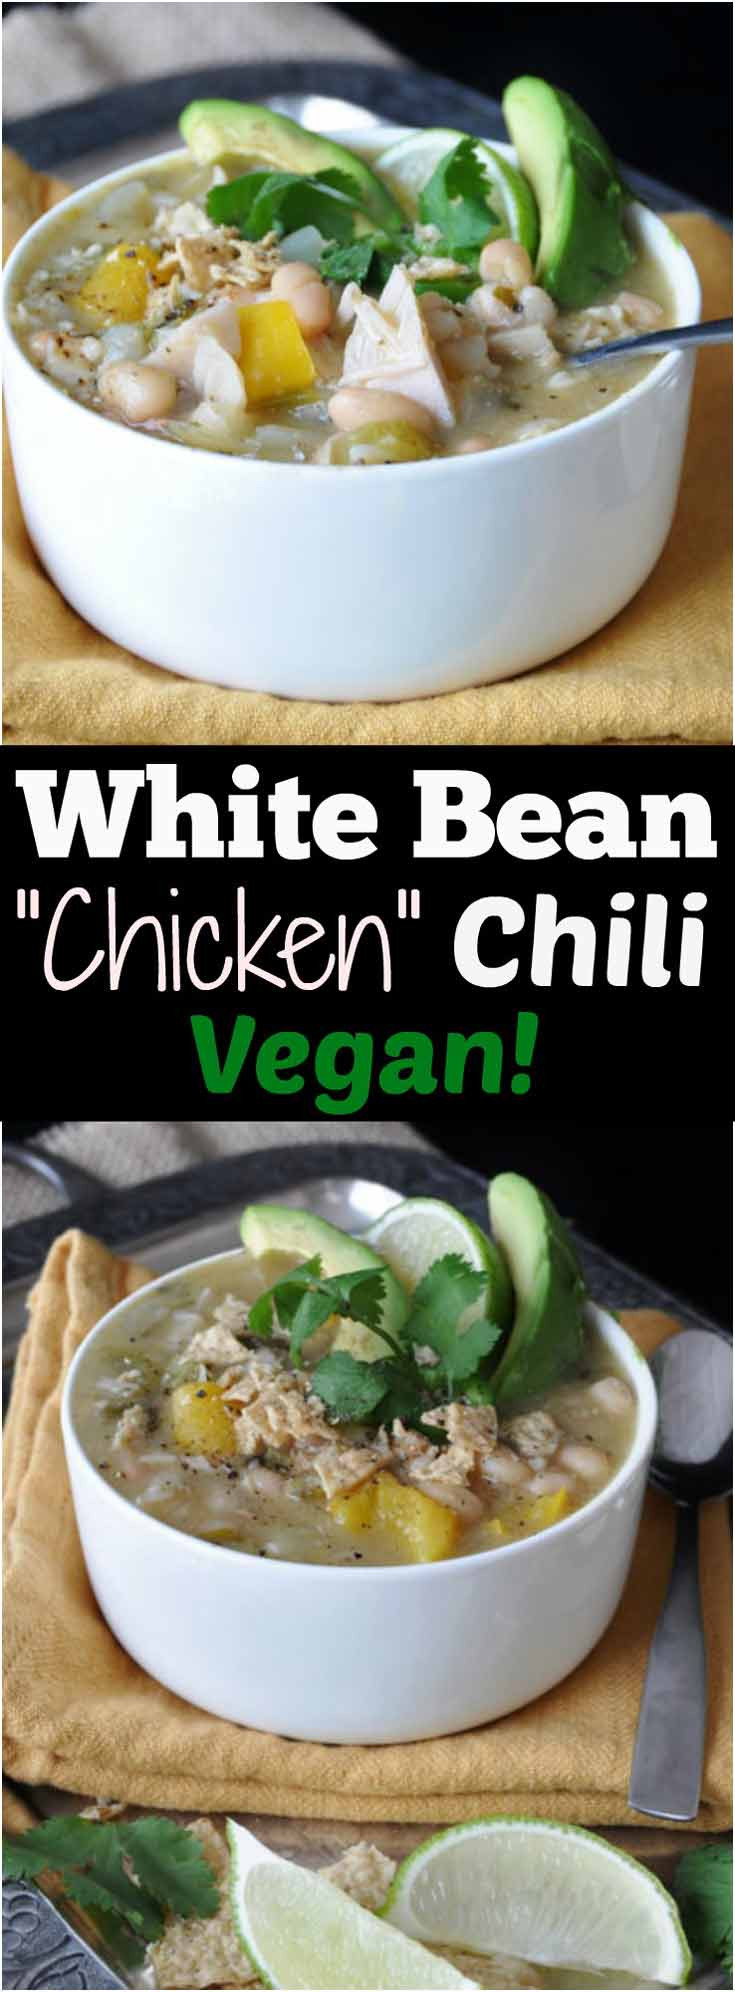 Vegetarian White Bean Chili
 Vegan White Bean "Chicken" Chili Veganosity